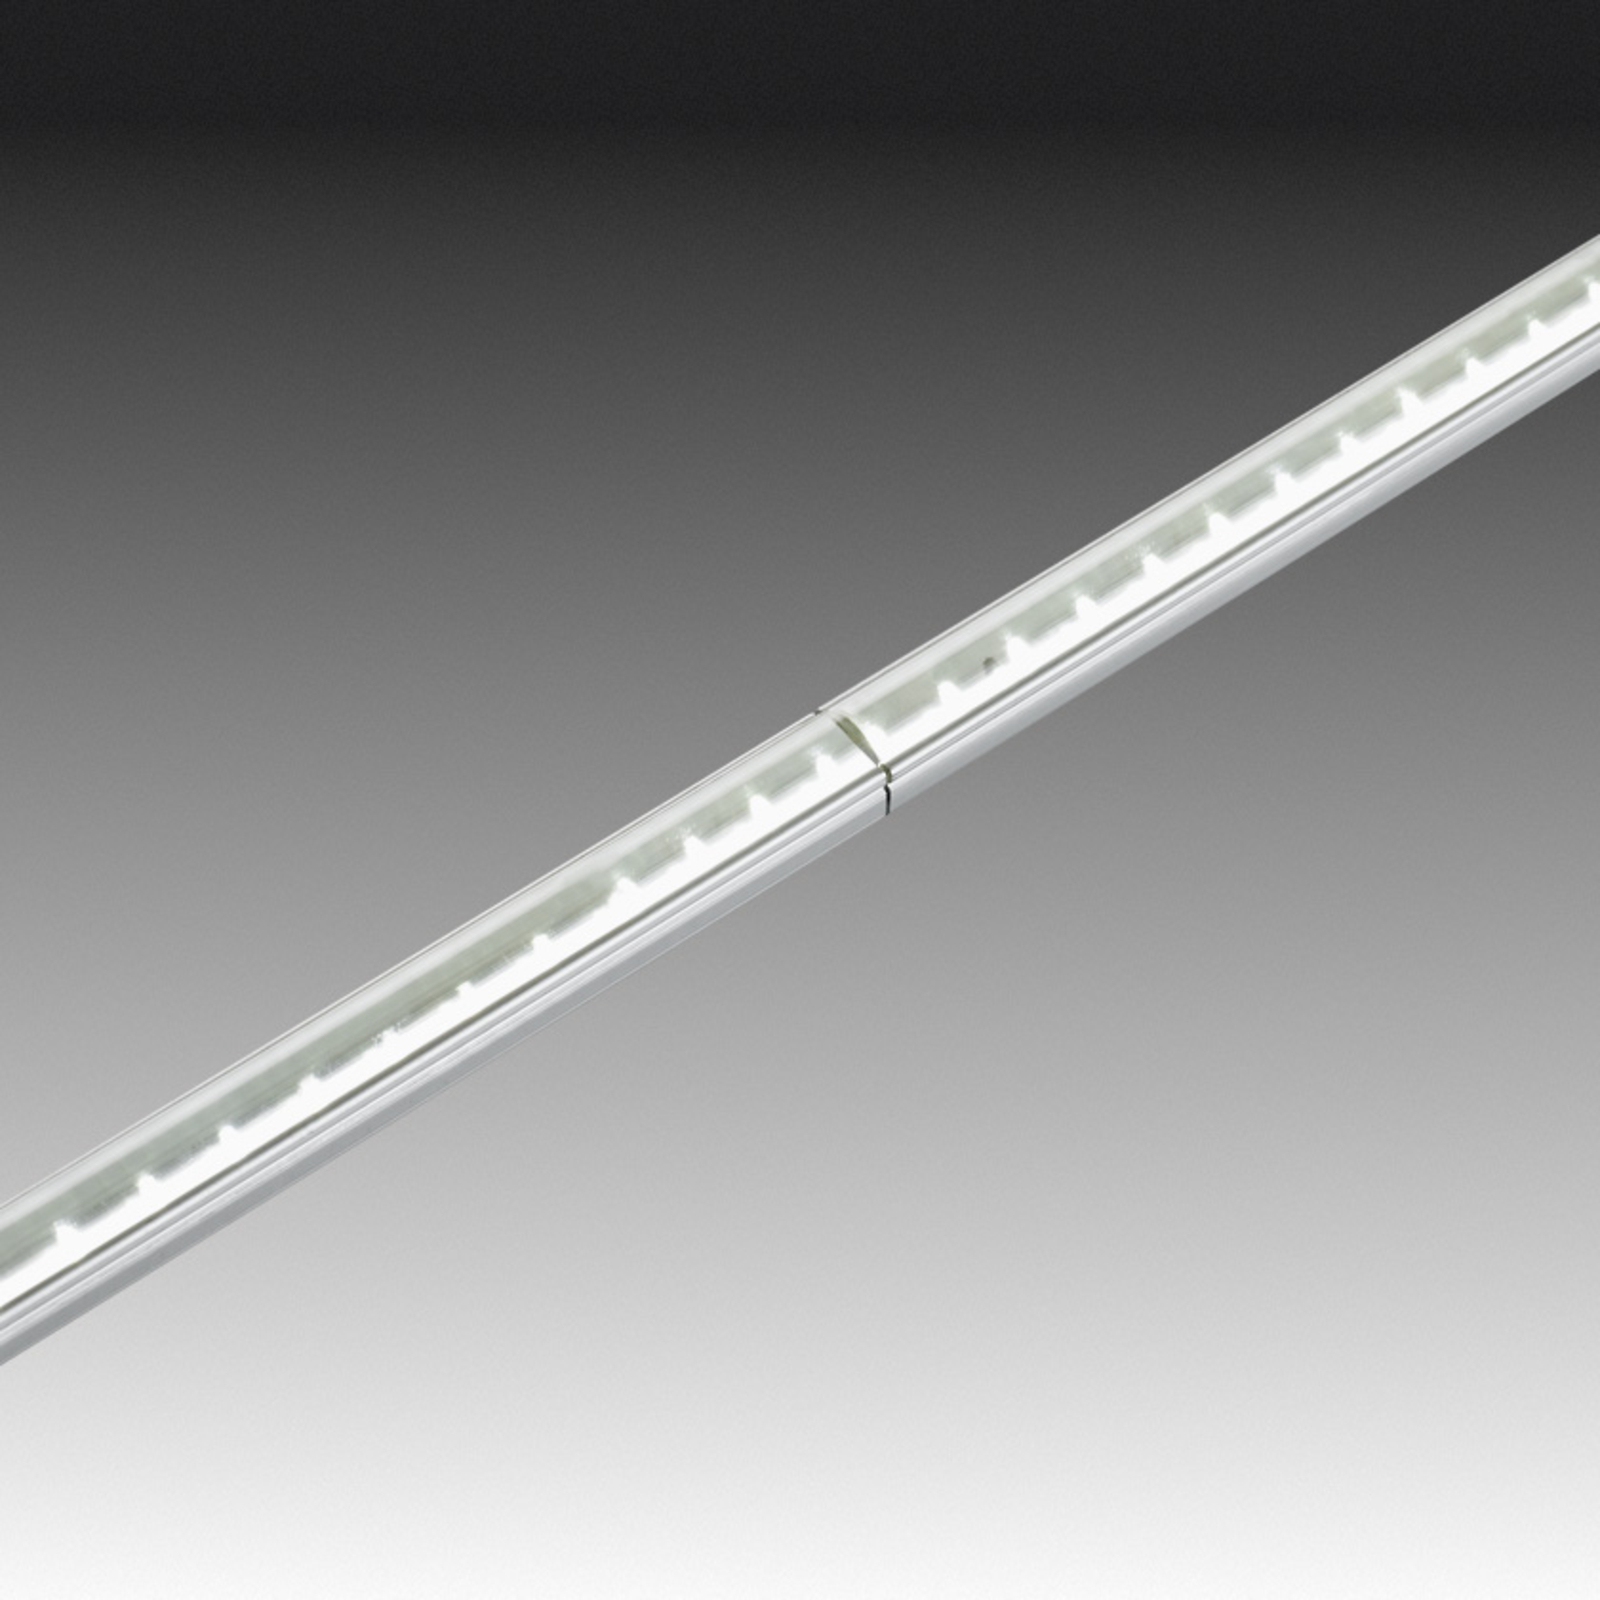 Tige LED Stick 2 pour meuble, 7 cm, blanc chaud